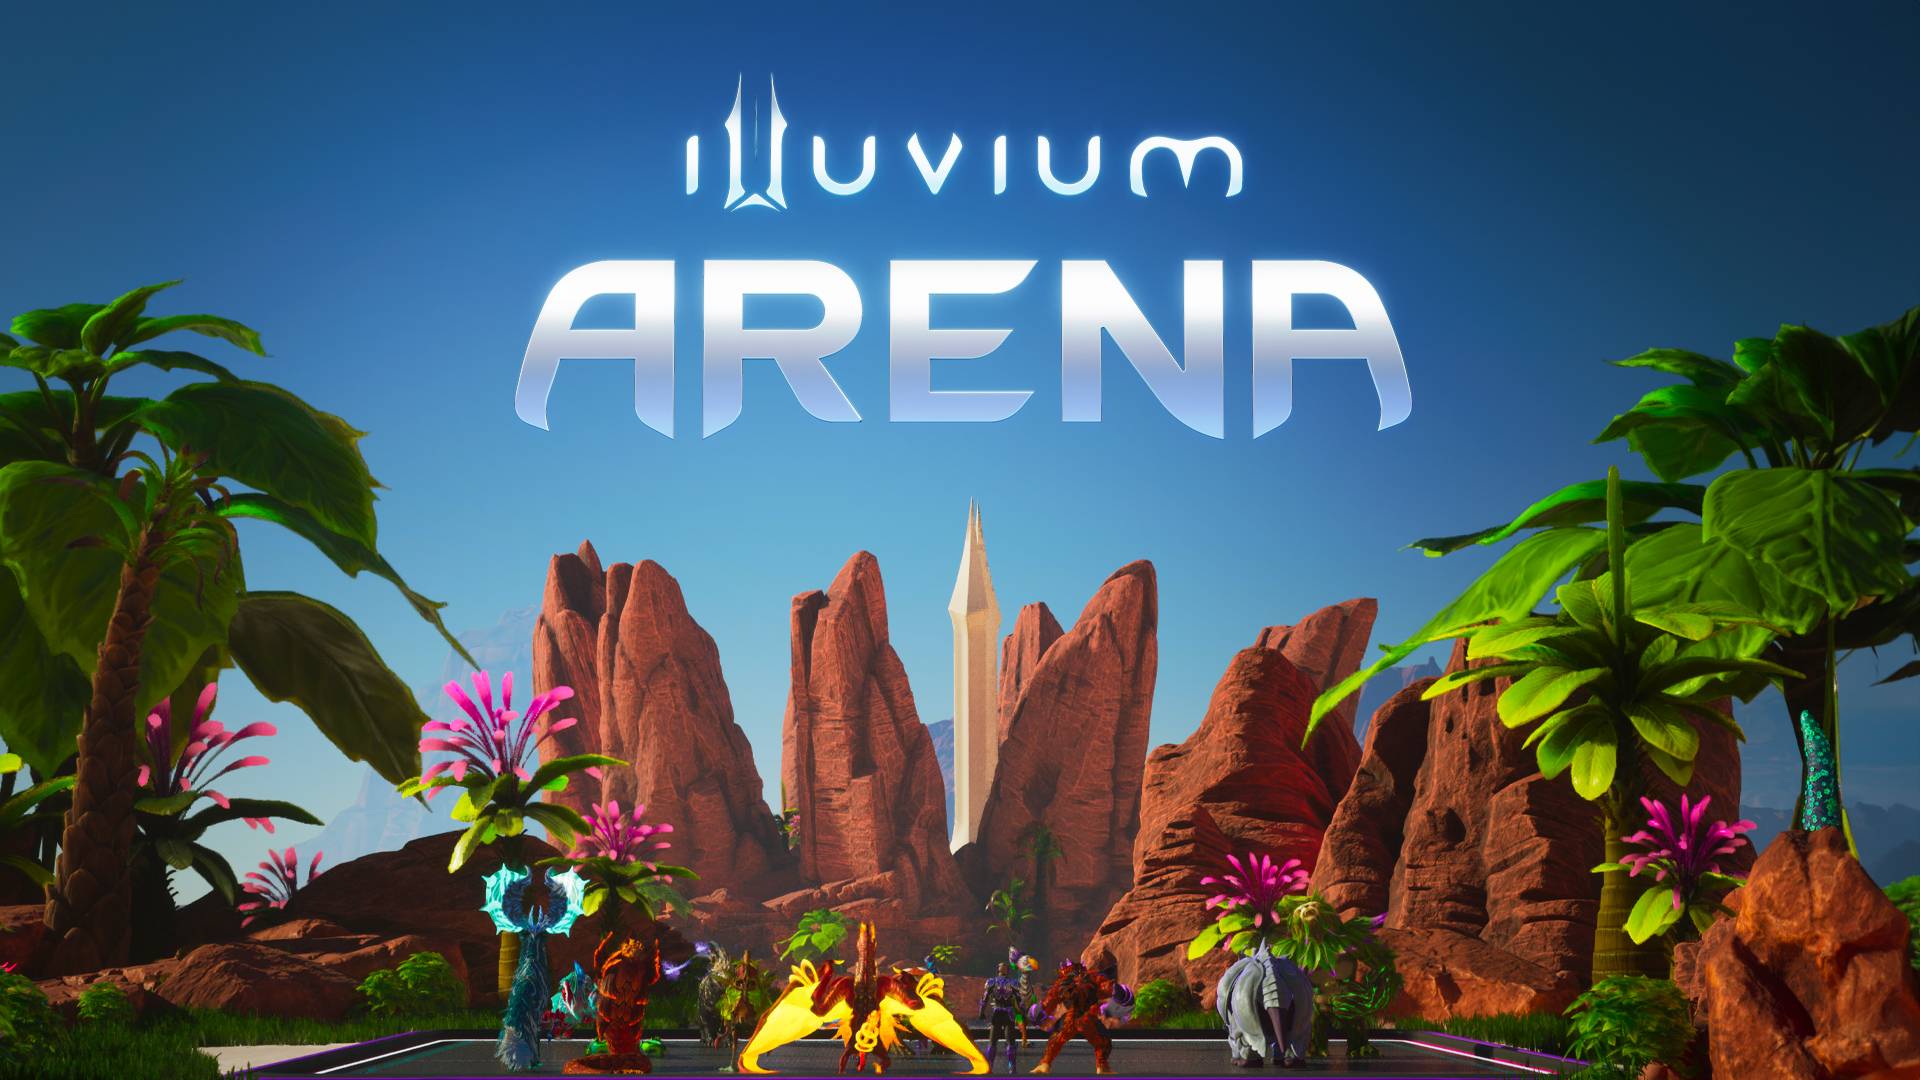 El debut épico de Illuvium: ¡un hito para los juegos Blockchain!